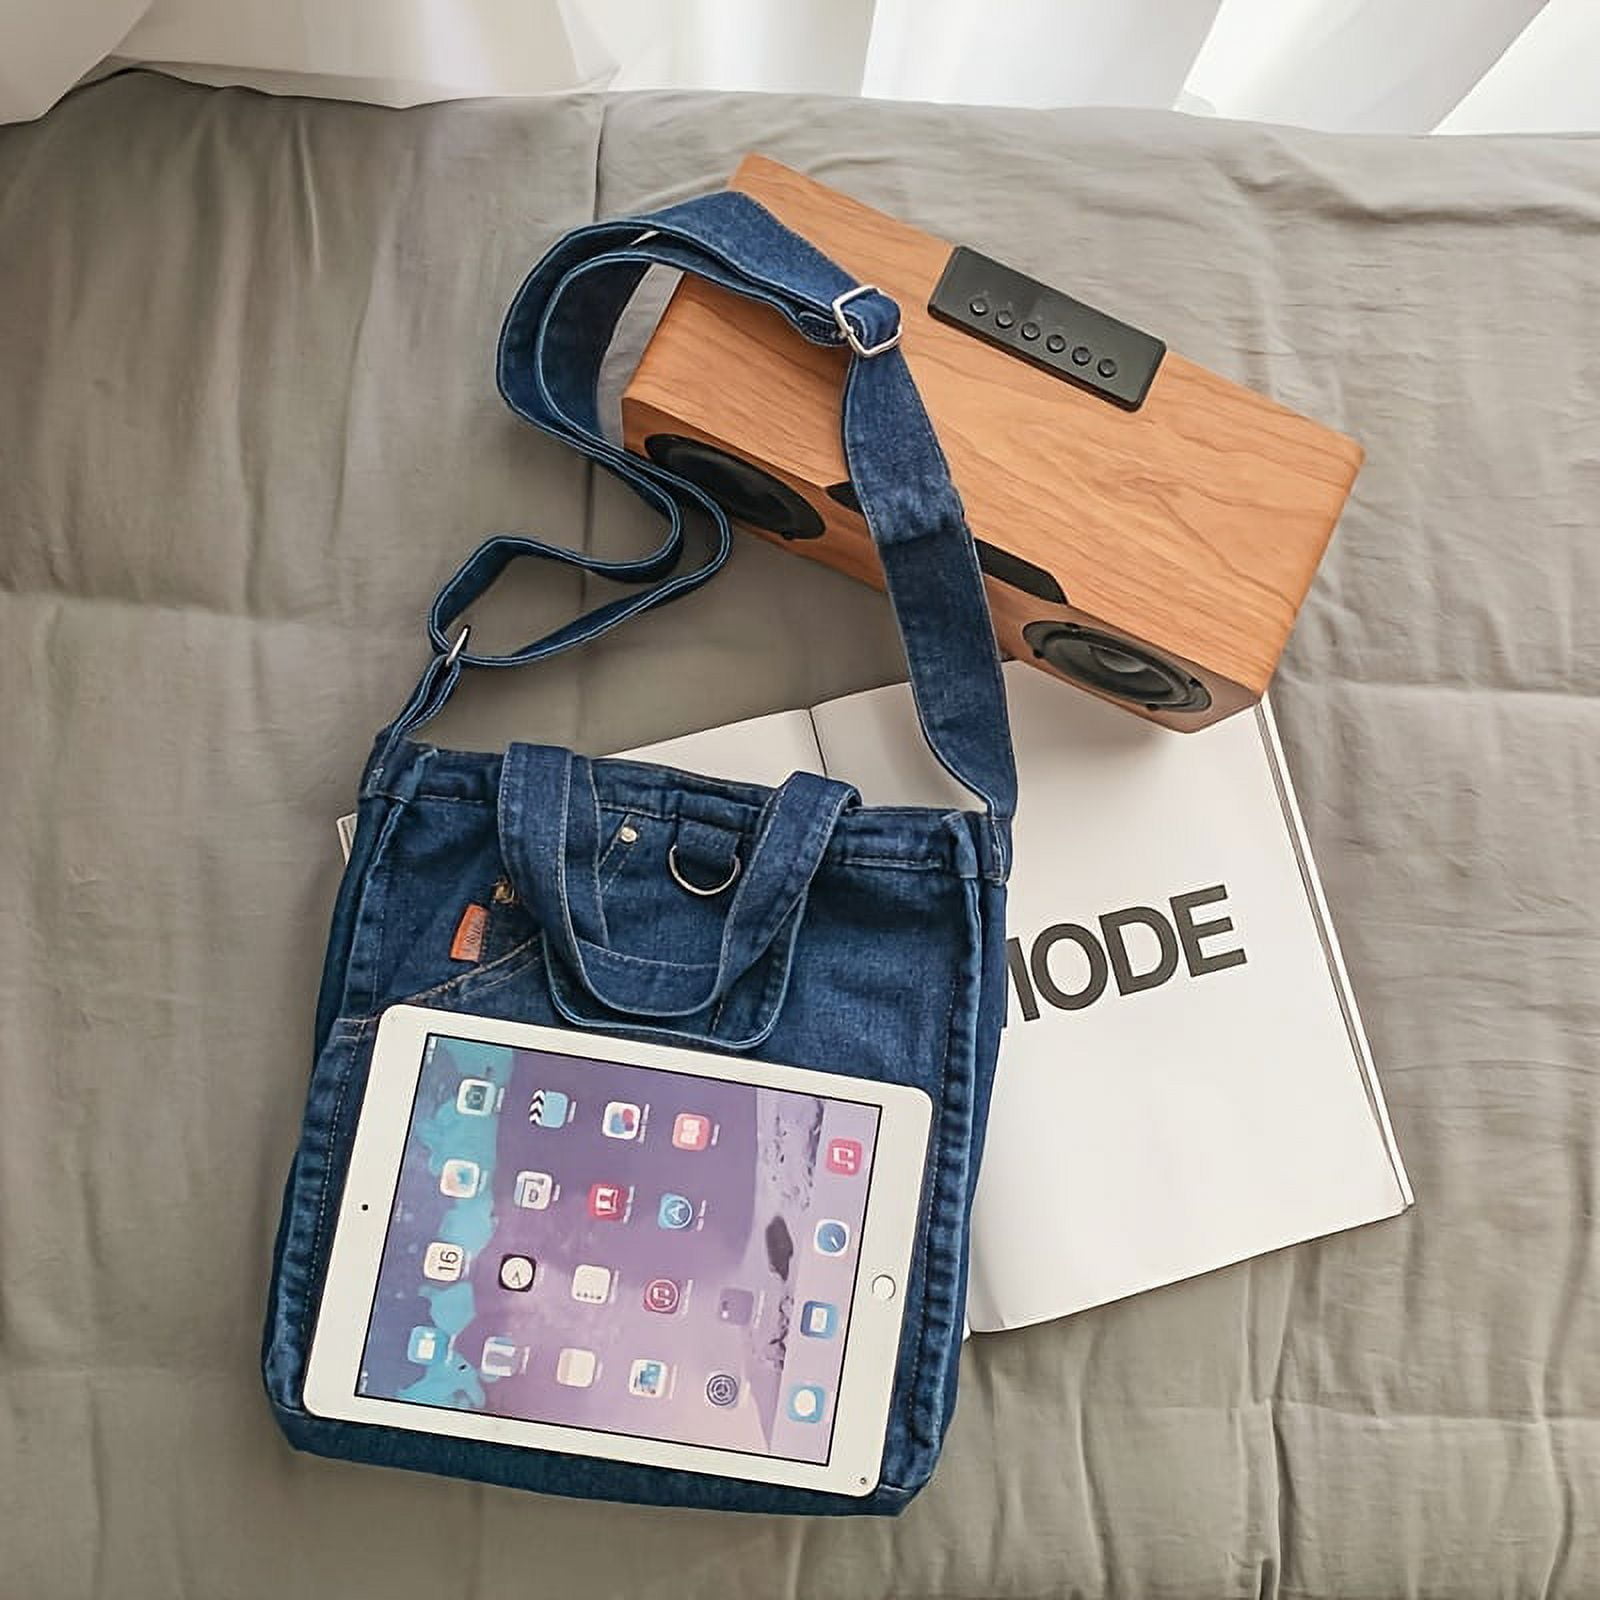 QUARRYUS Denim Design Tote Bag, Large Capacity Zipper Shoulder Bag with Adjustable Strap for Students, Women's, Blue